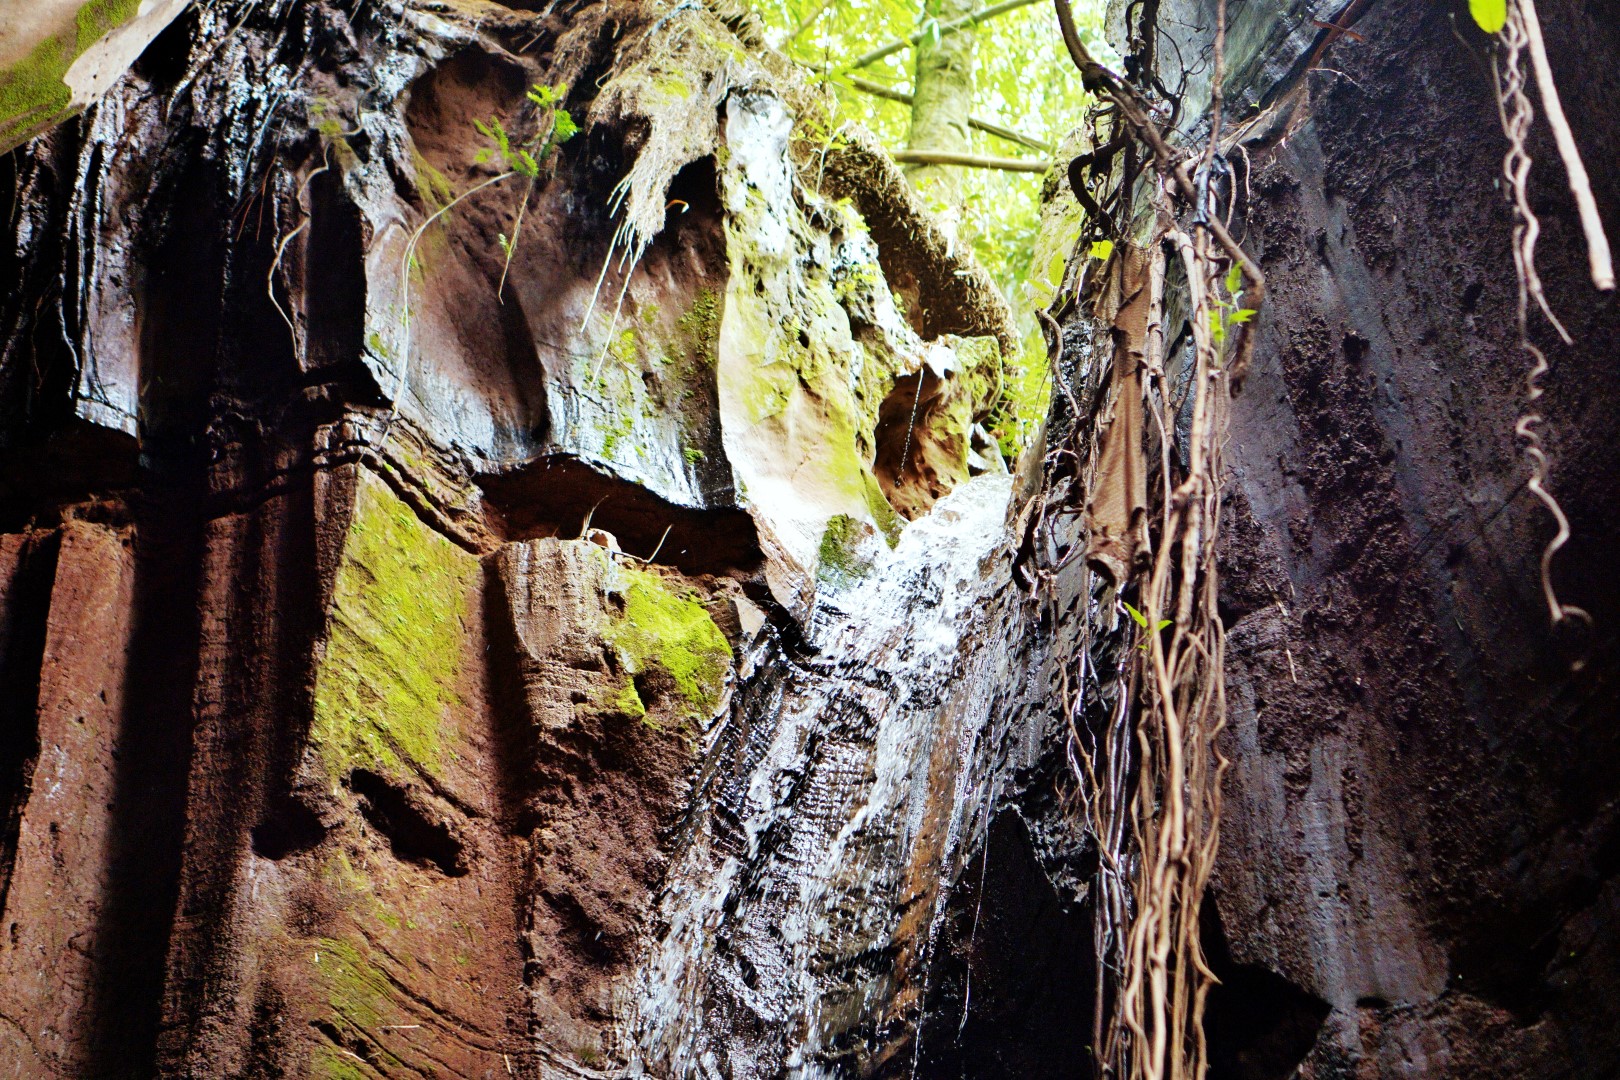 Ngwo waterfalls in Enugu, Nigeria